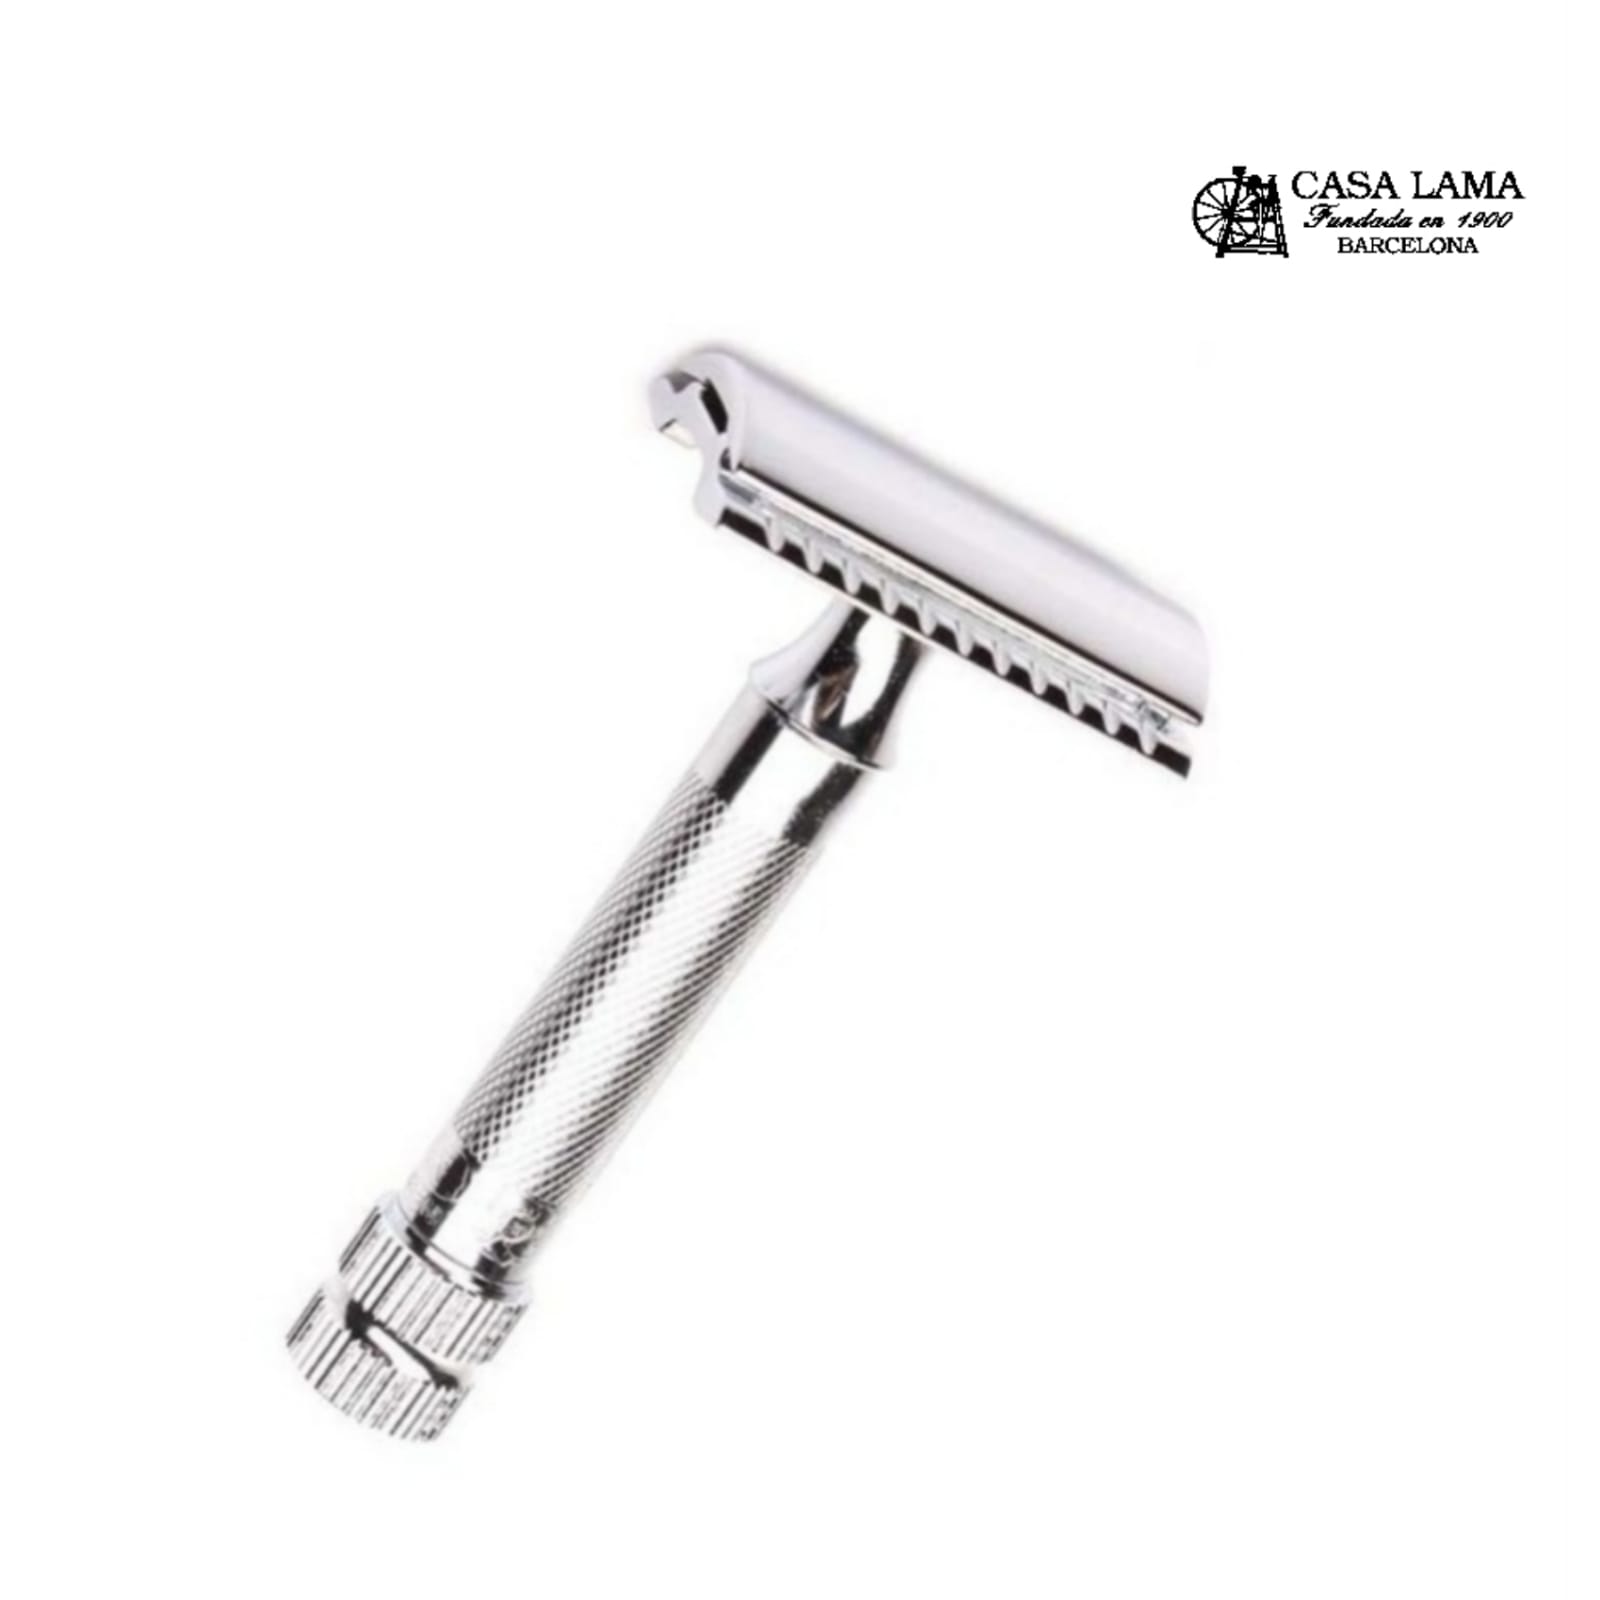 Maquina de afeitar modelo34 Merkur cromada - Cuchilleria Casa Lama